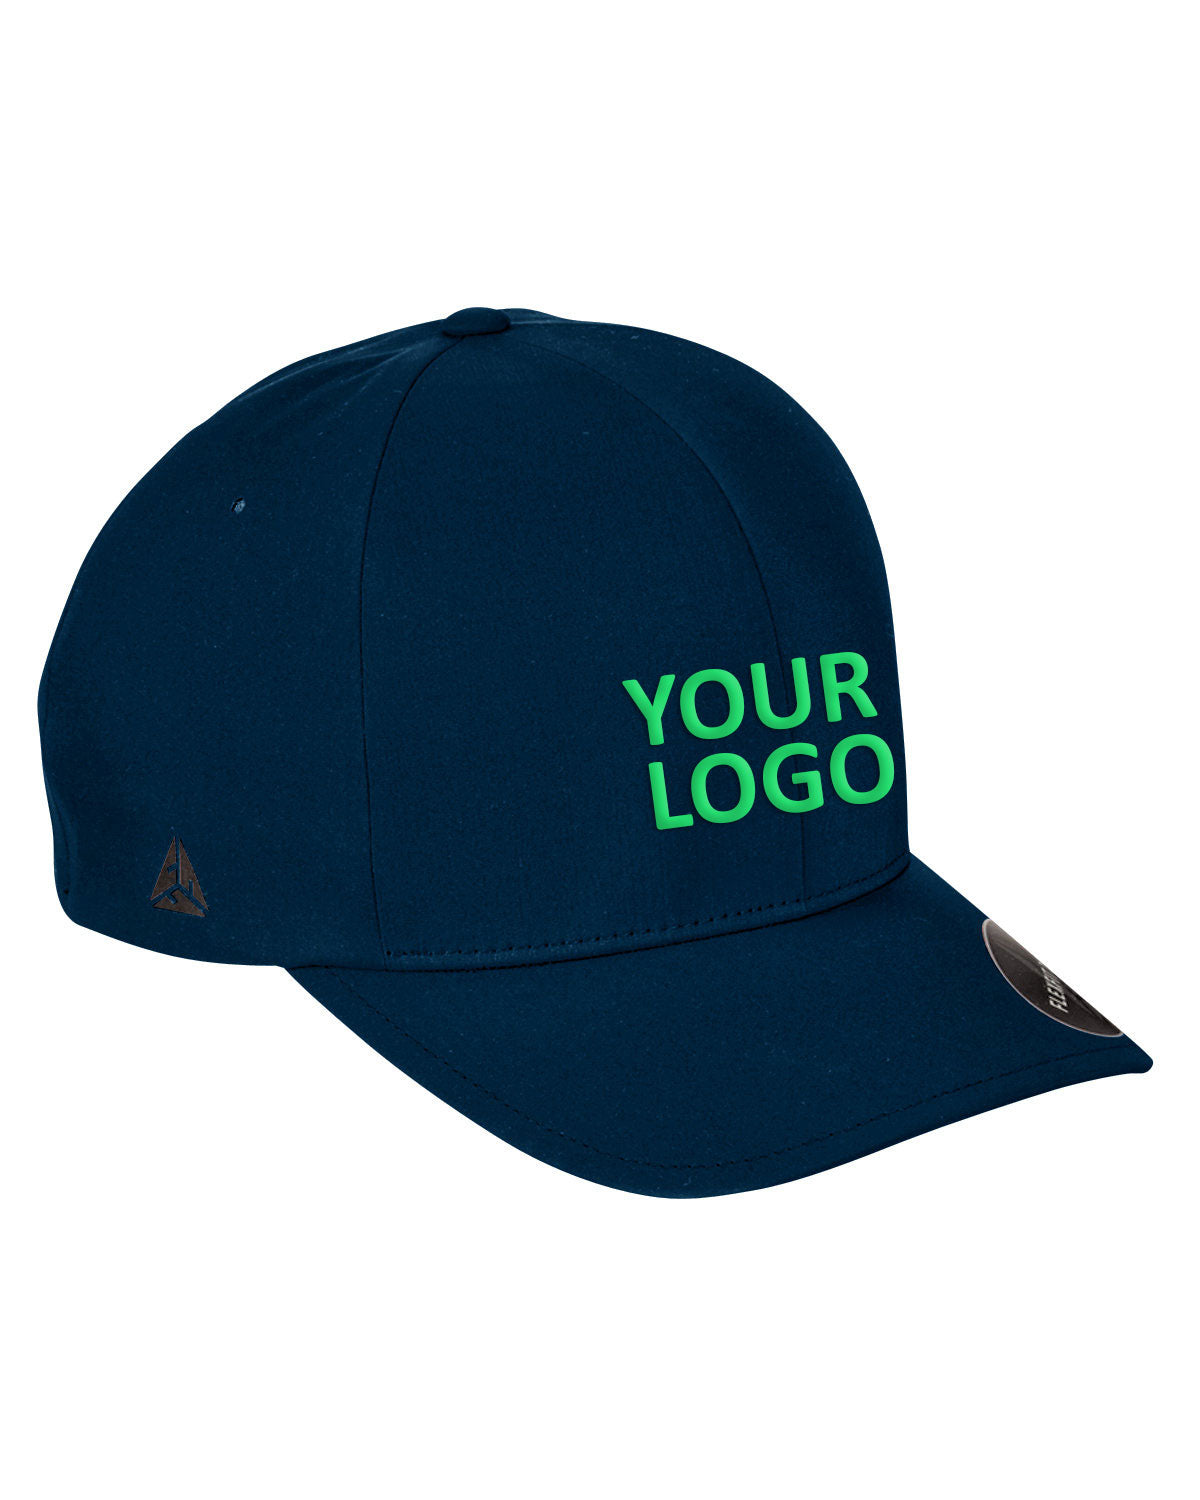 flexfit_yp180_navy_company_logo_headwear